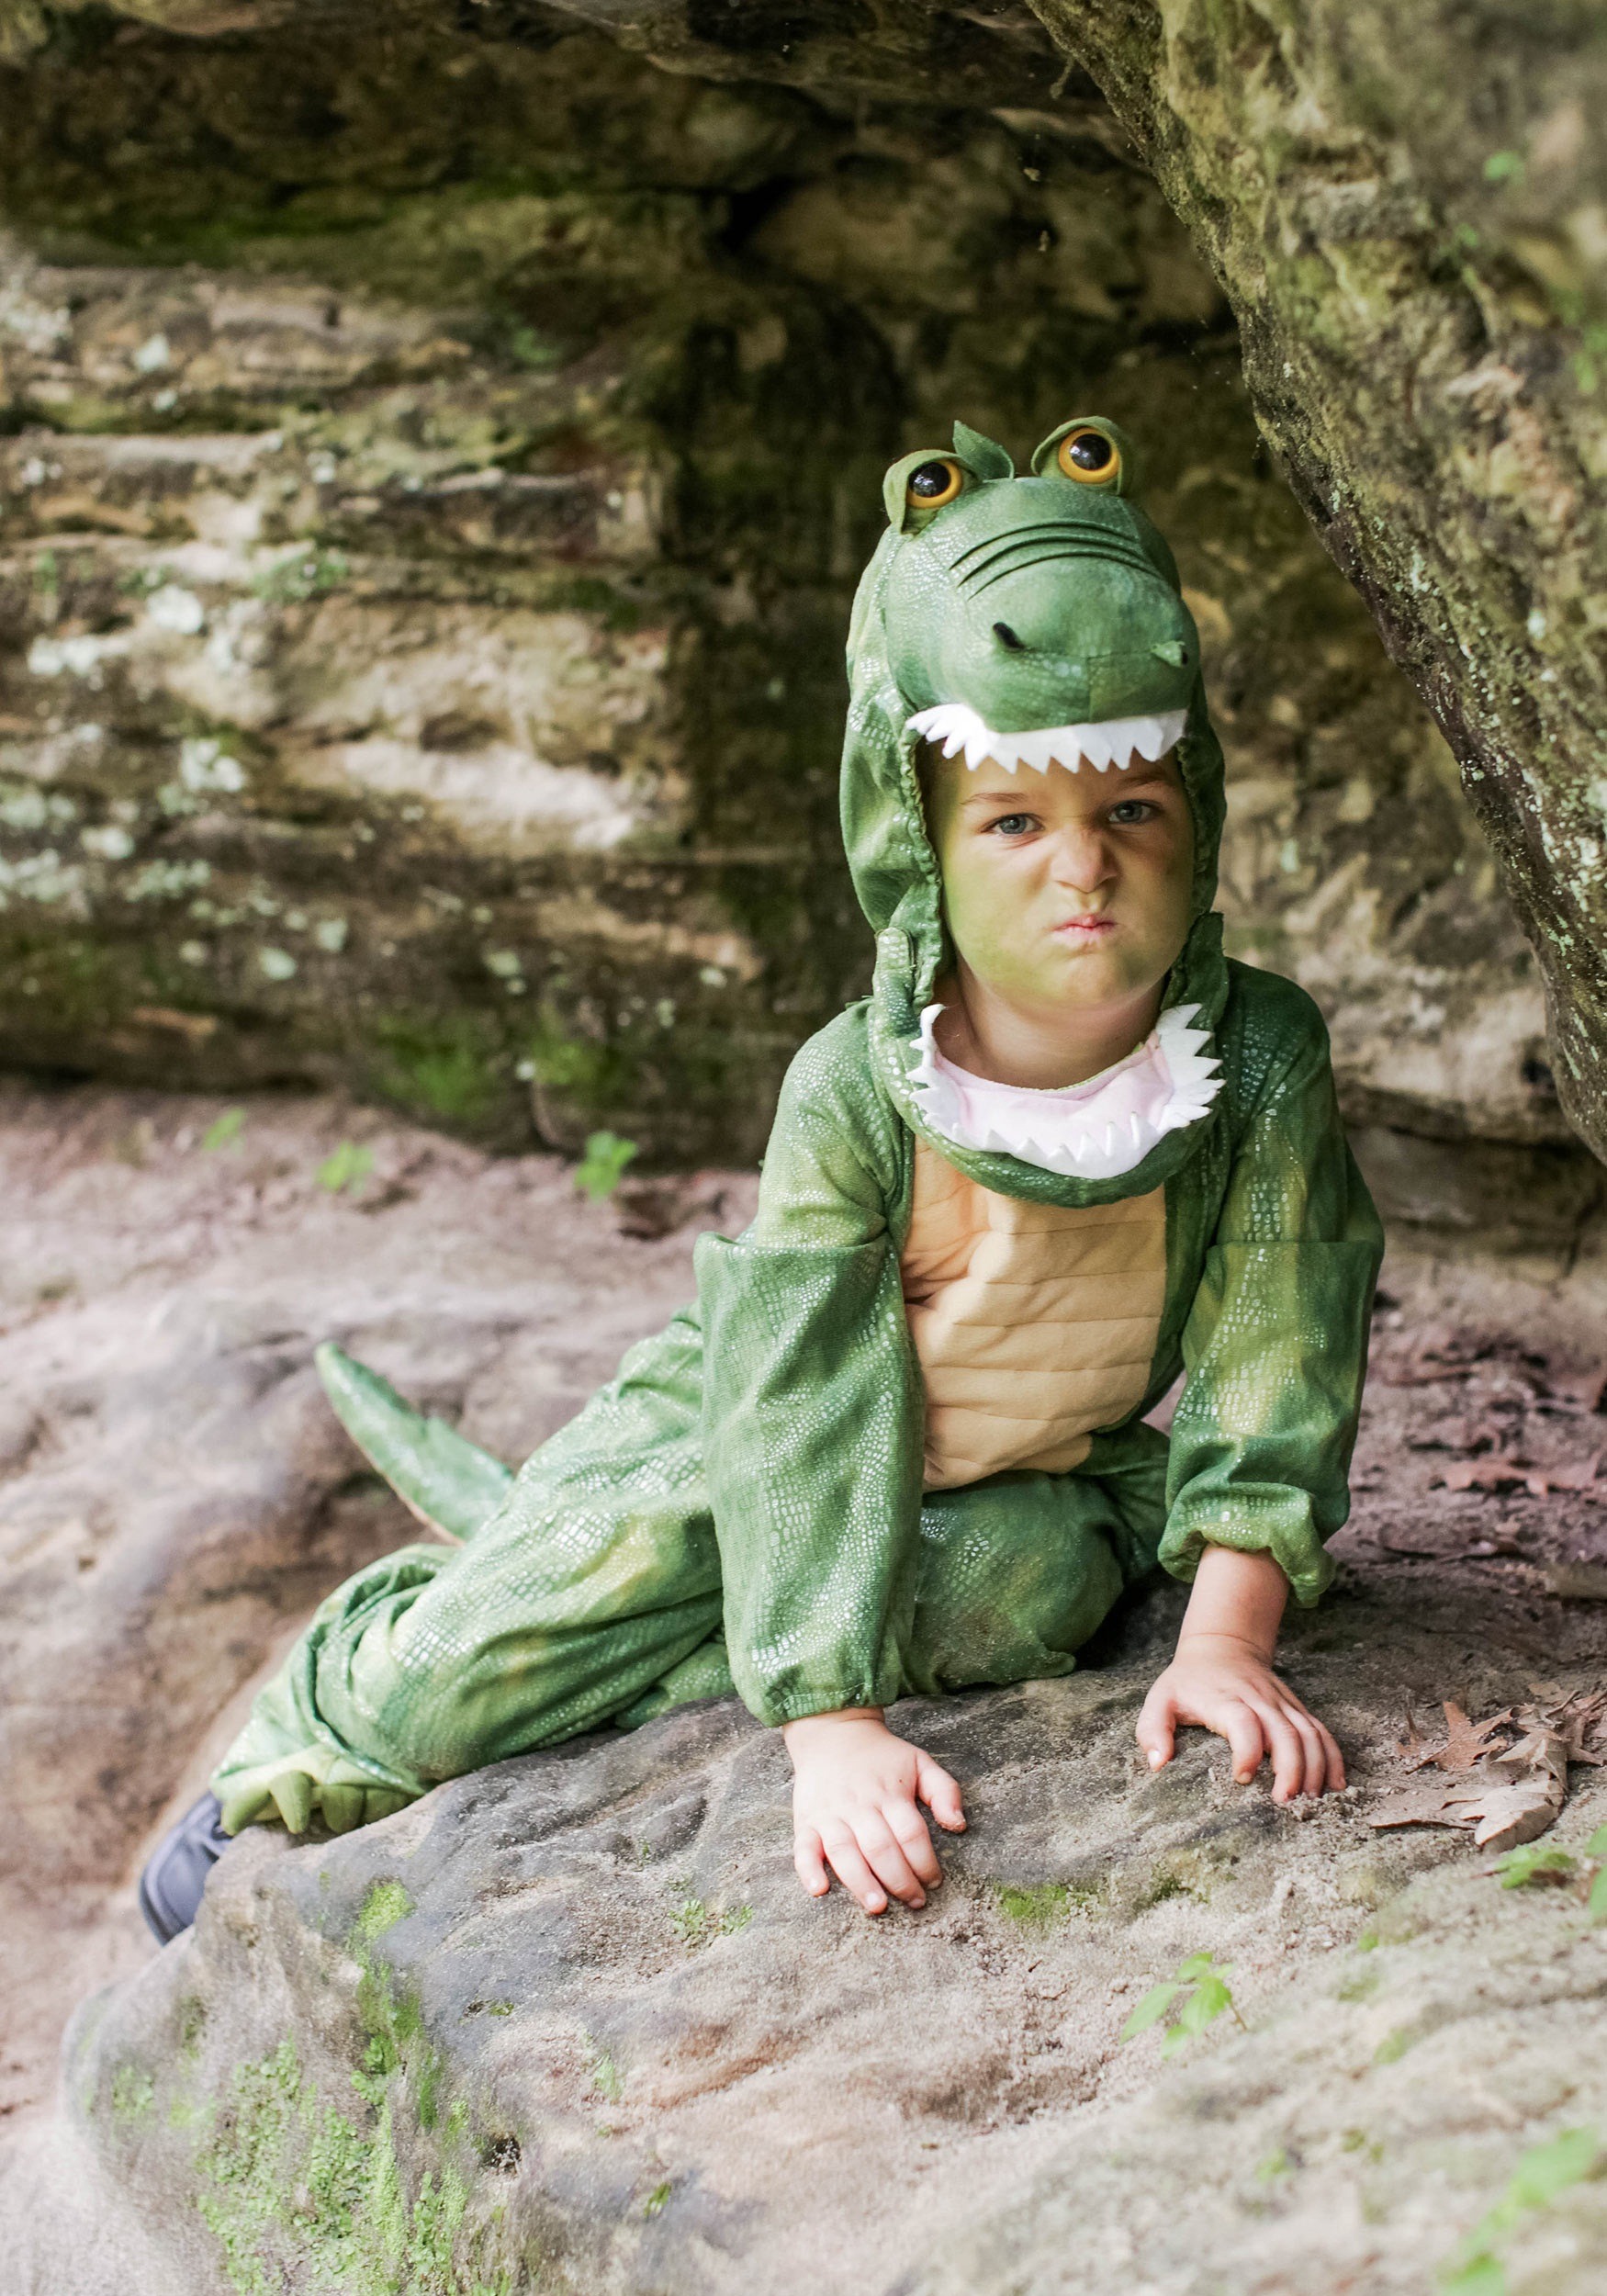 kids-alligator-costume.jpg